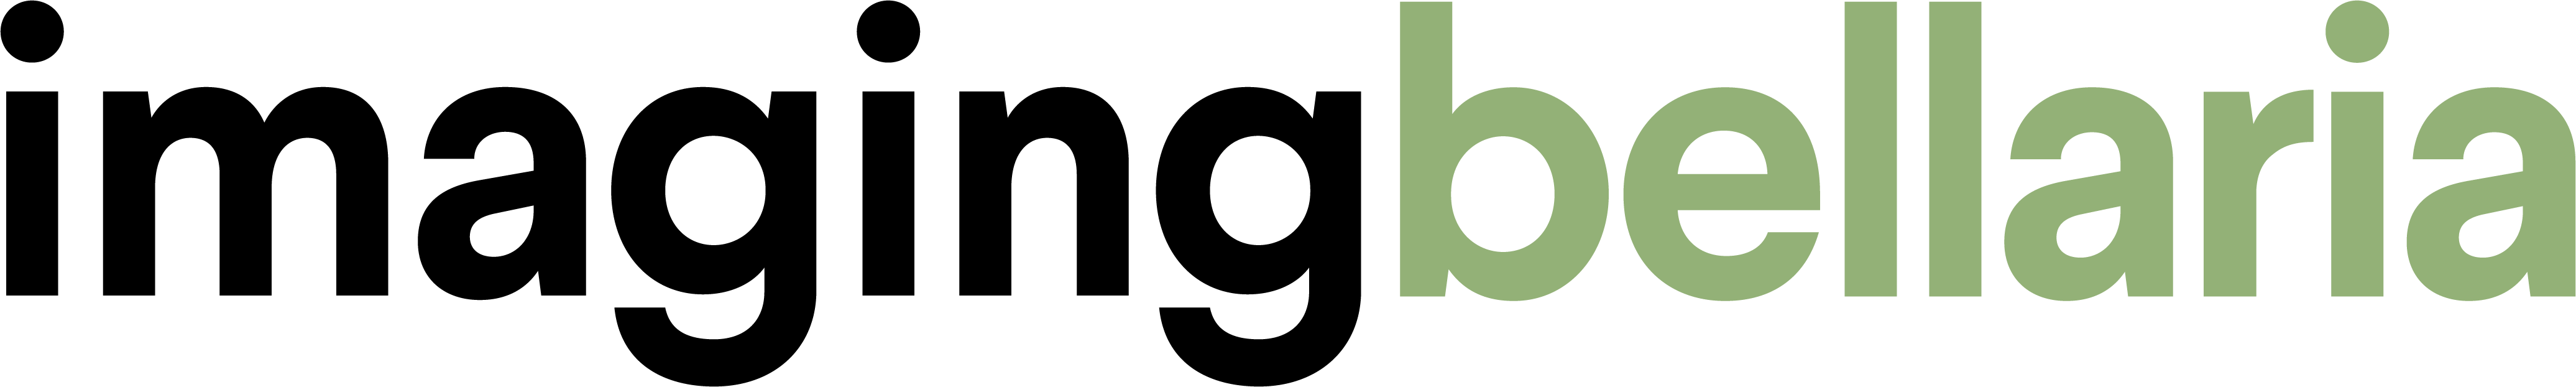 Logo Imaging Bellaria 2020 Pantone577 U